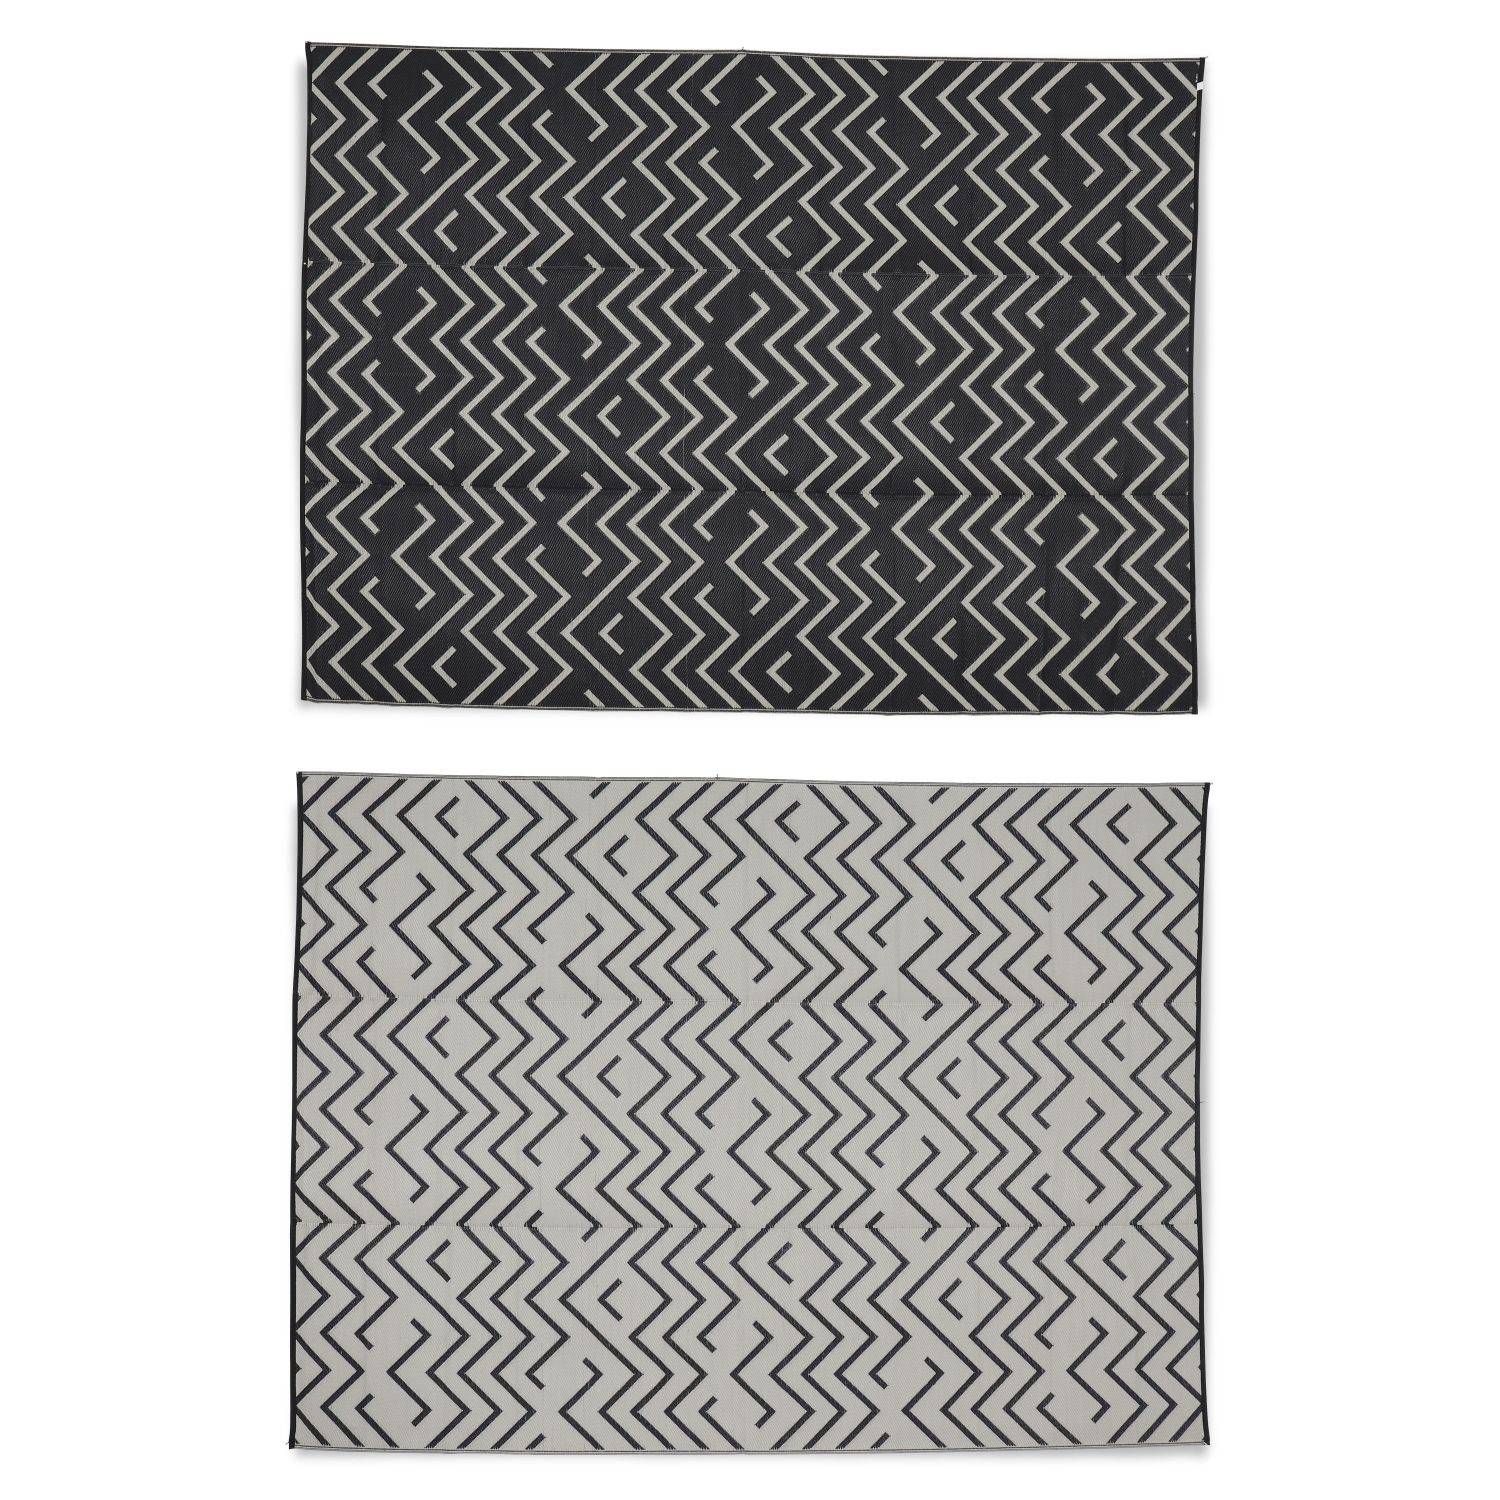 Tapis d’extérieur 270x360cm Sydney - Rectangulaire, motif vagues noir / beige, jacquard, réversible, indoor / outdoor Photo2